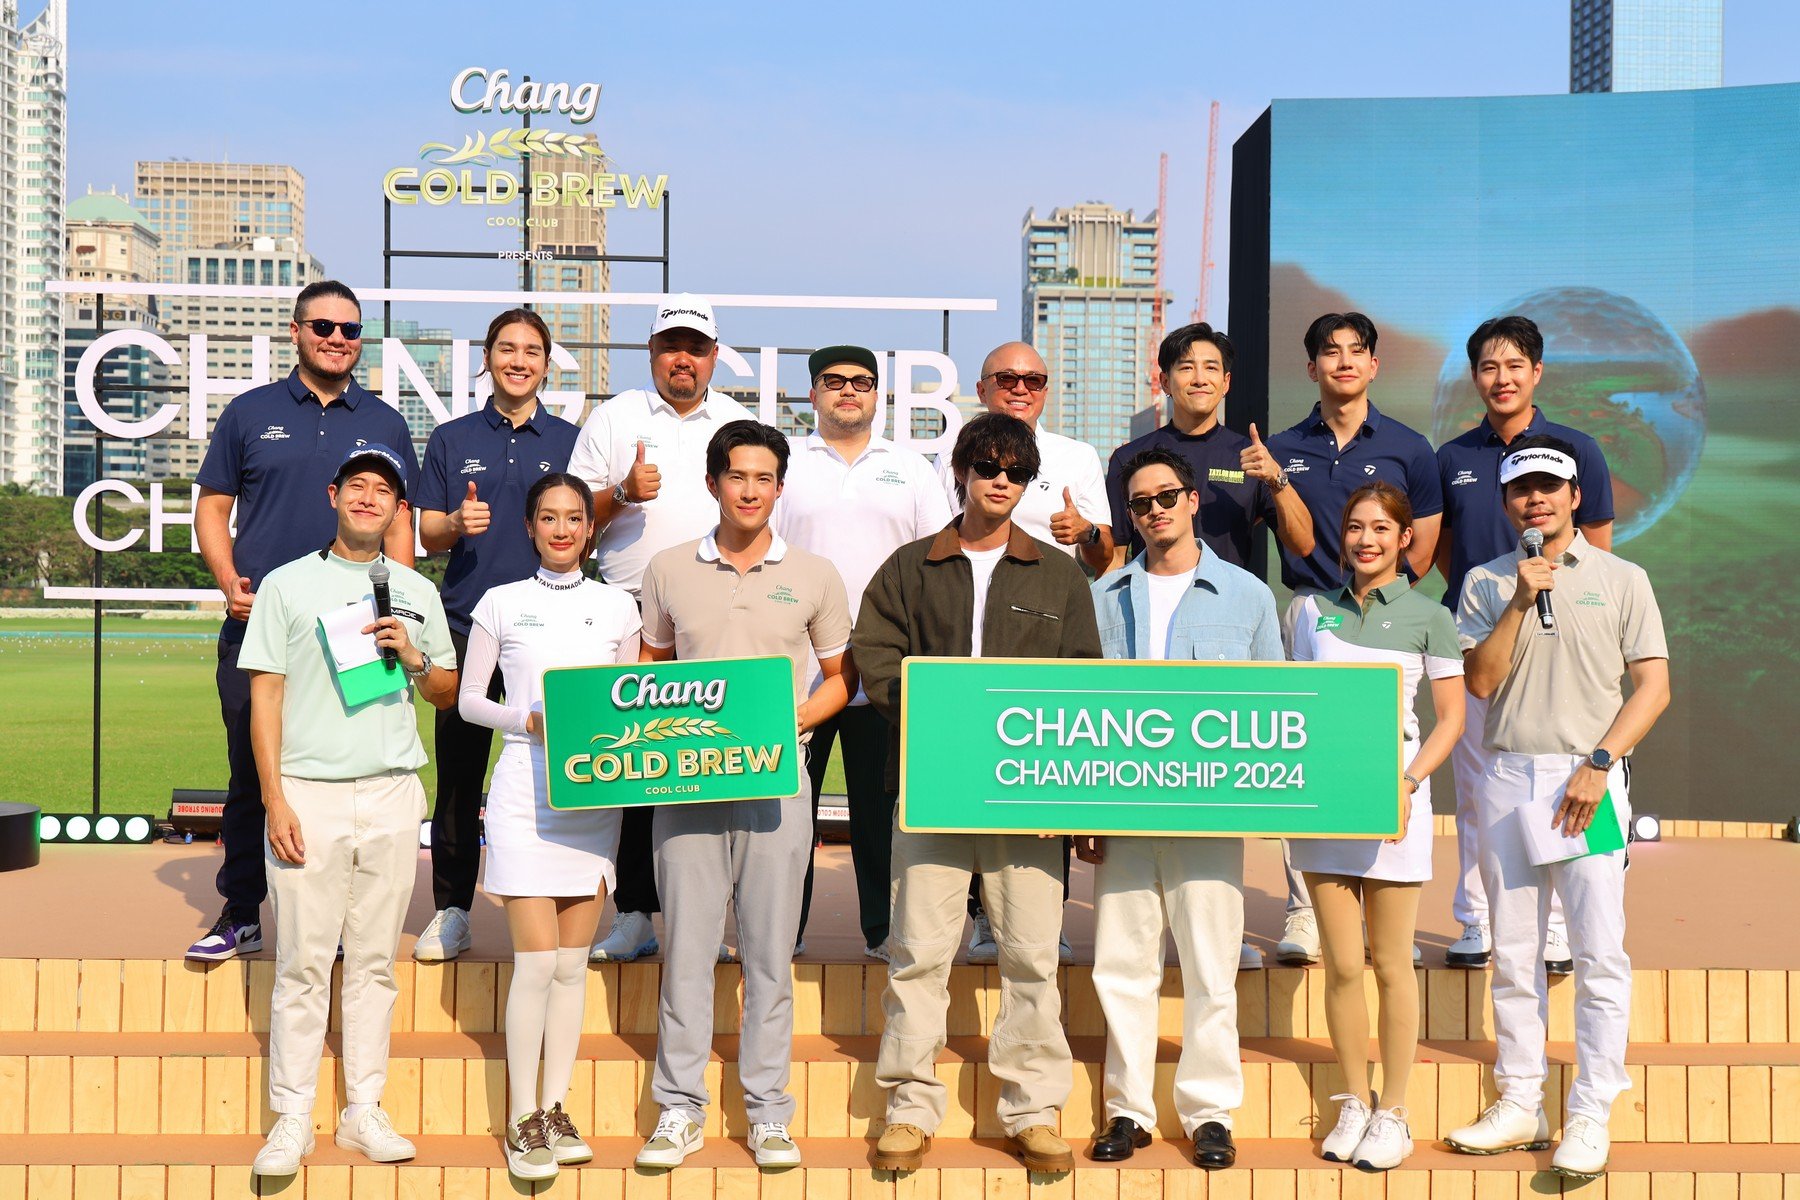 ไบร์ท-เฟย ชวนคู่หูนักกอล์ฟเซเลบ นำทีมโดยเจมส์ มาร์-พาย รินรดา Tee-Off โชว์วงสวิงเปิดการแข่งขัน Chang Cold Brew Cool Club presents Chang Club Championship 2024 แคมเปญสุดคูลของช้าง โคลด์ บรูว์ คูล คลับ 2024 และเปิดคอลเลคชั่นใหม่เอาใจสายแคมป์ปิ้ง-สายกอล์ฟ